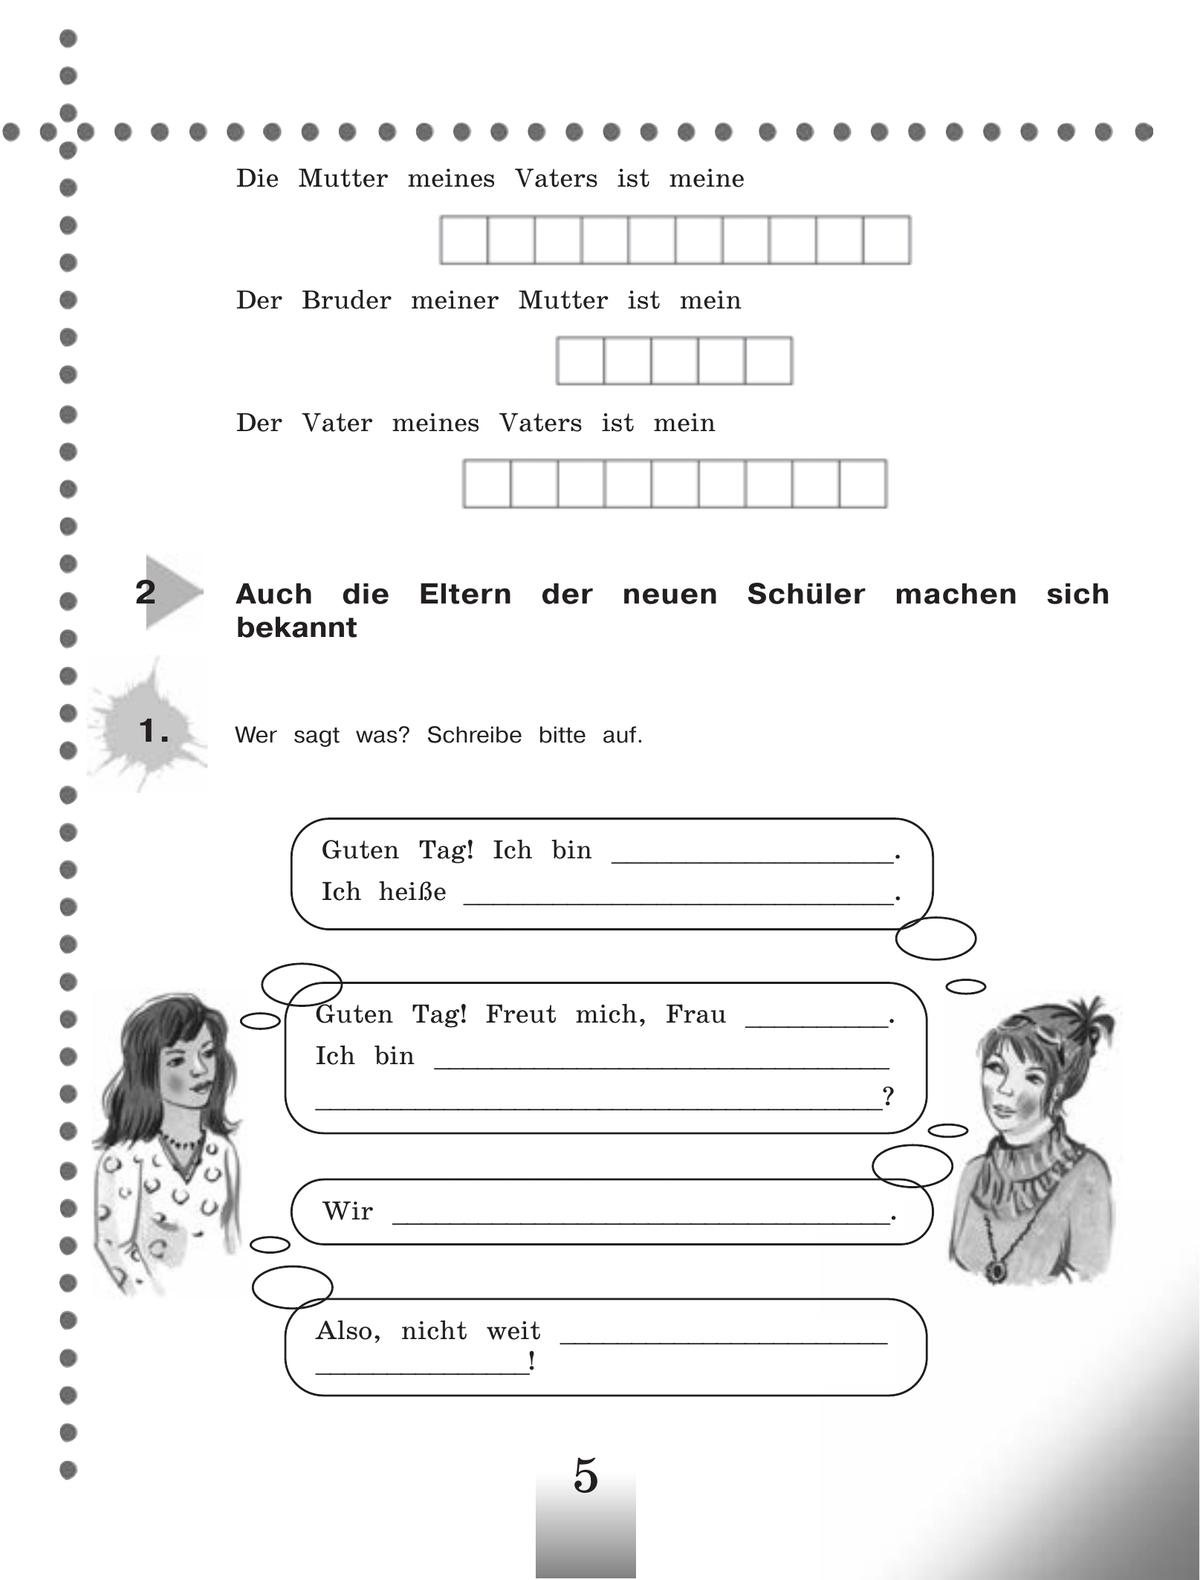 Немецкий язык. Рабочая тетрадь. 5 класс 3